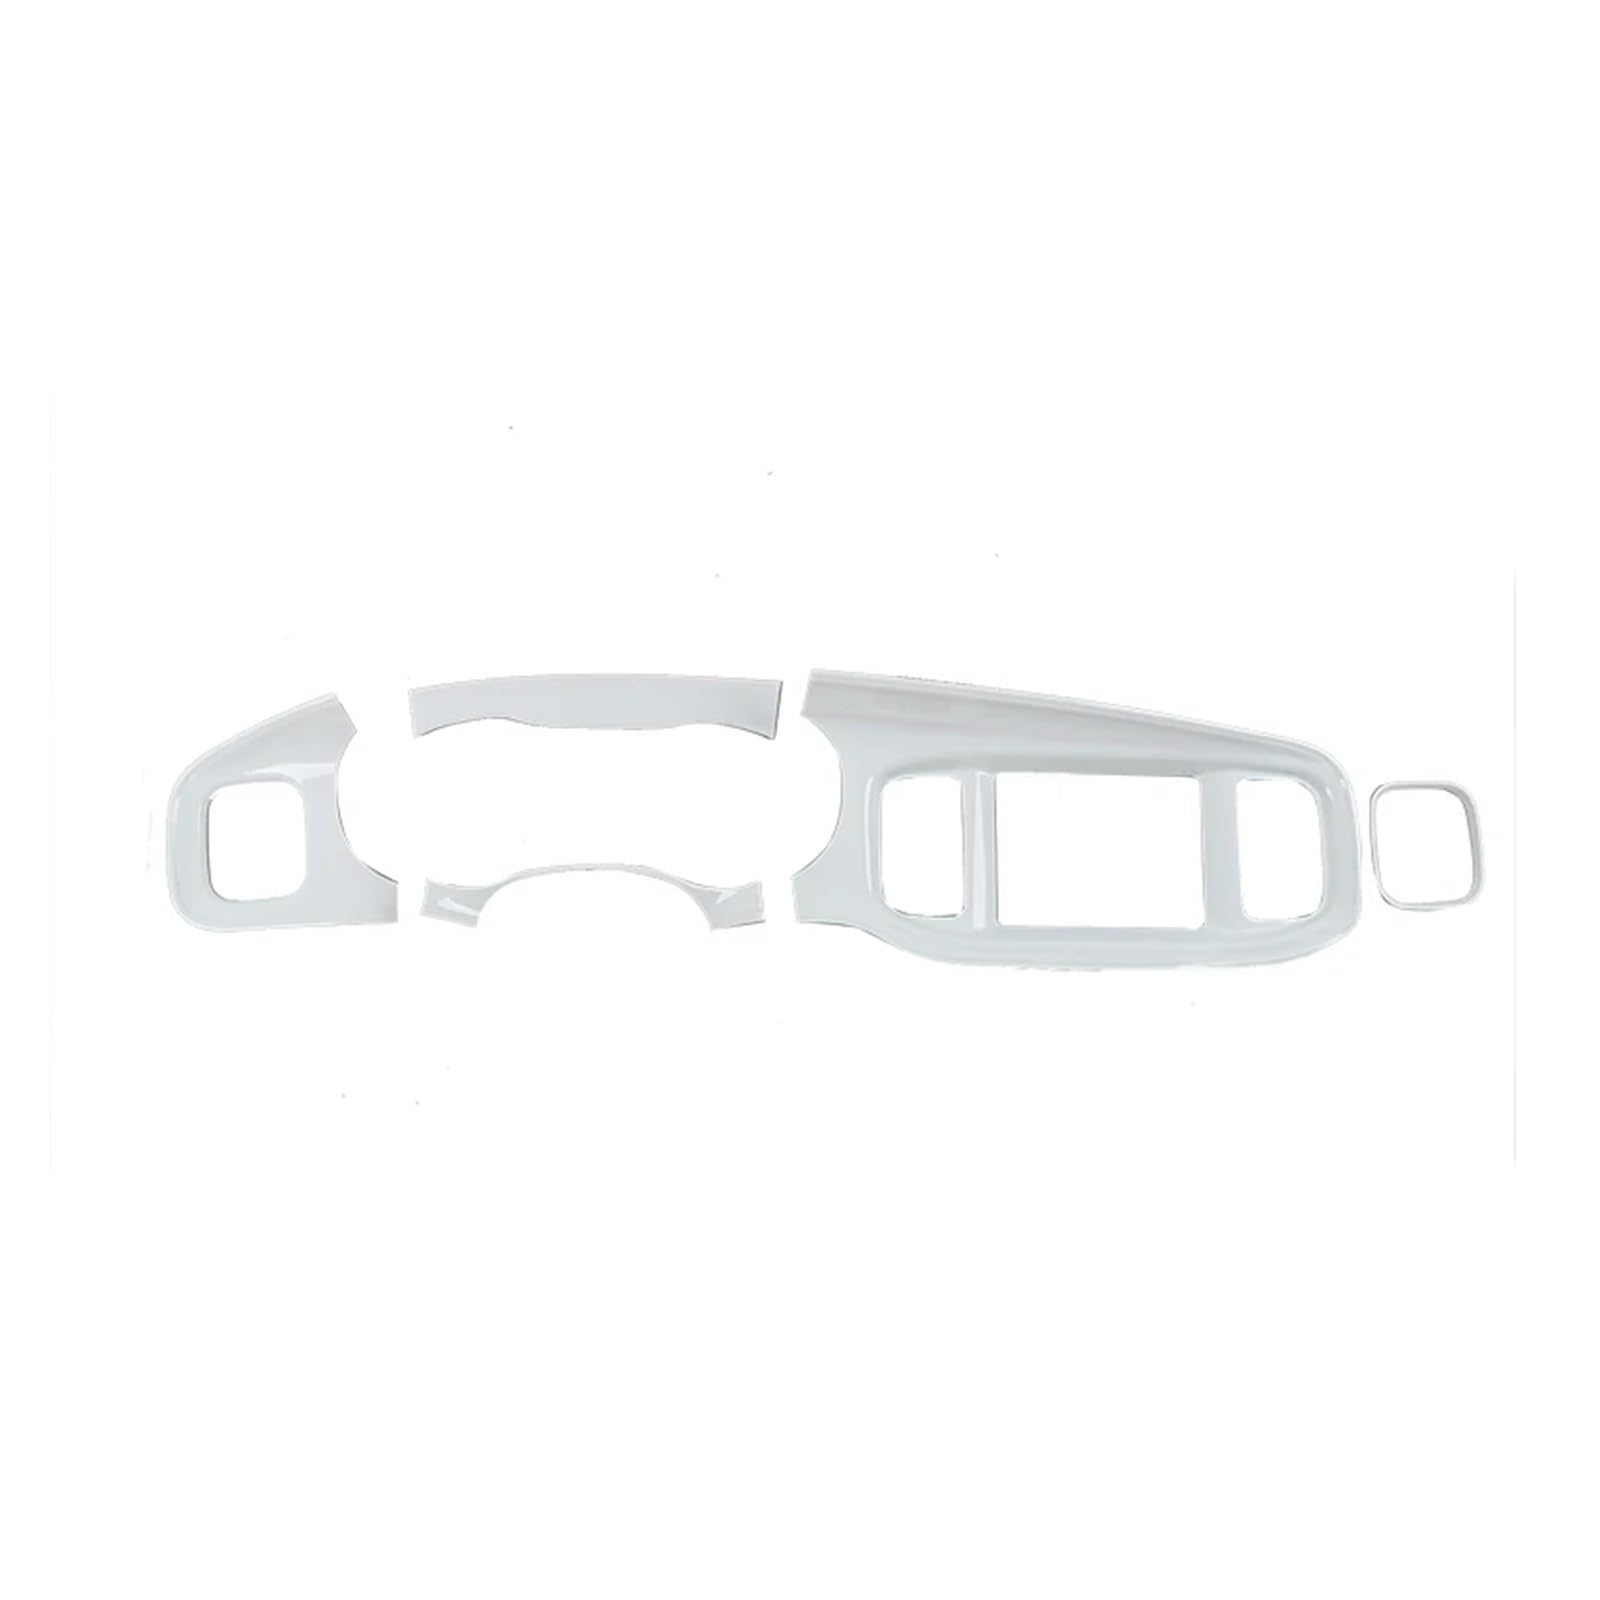 ABS Auto Zentrale Steuerung Armaturenbrett Instrumententafel Dekoration Aufkleber Kompatibel for Dodge Charger 2015 Up Auto Innen Zubehör(White1) von yuxinlugr